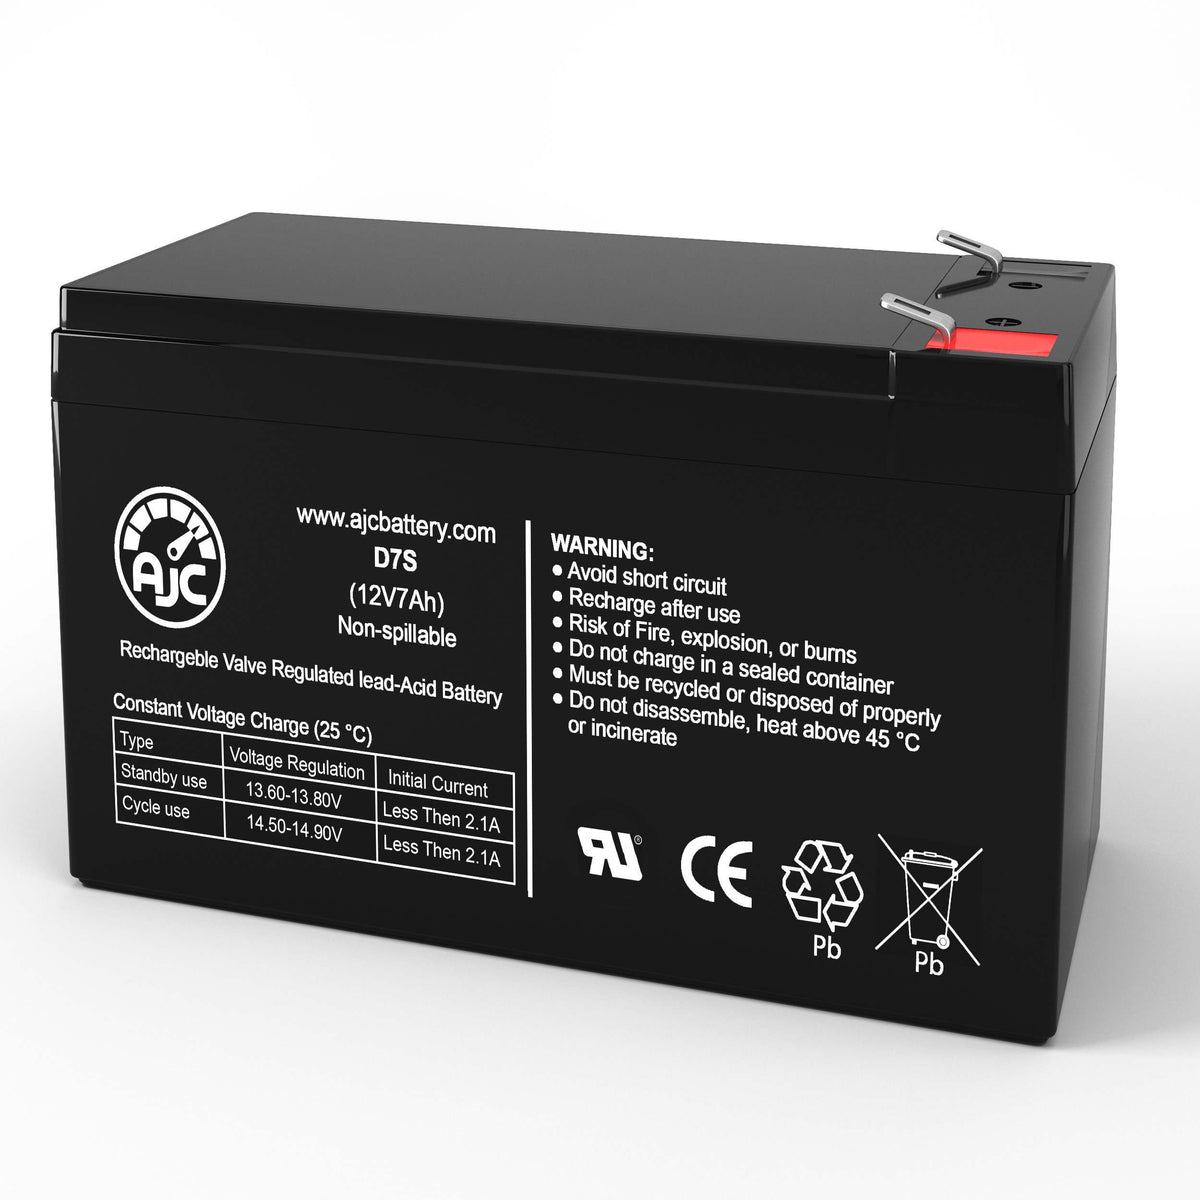 Alpha Technologies Nexsys AWM 750 750i 017110XX 12V 7Ah UPS Replacement Battery BatteryClerkcom UPS